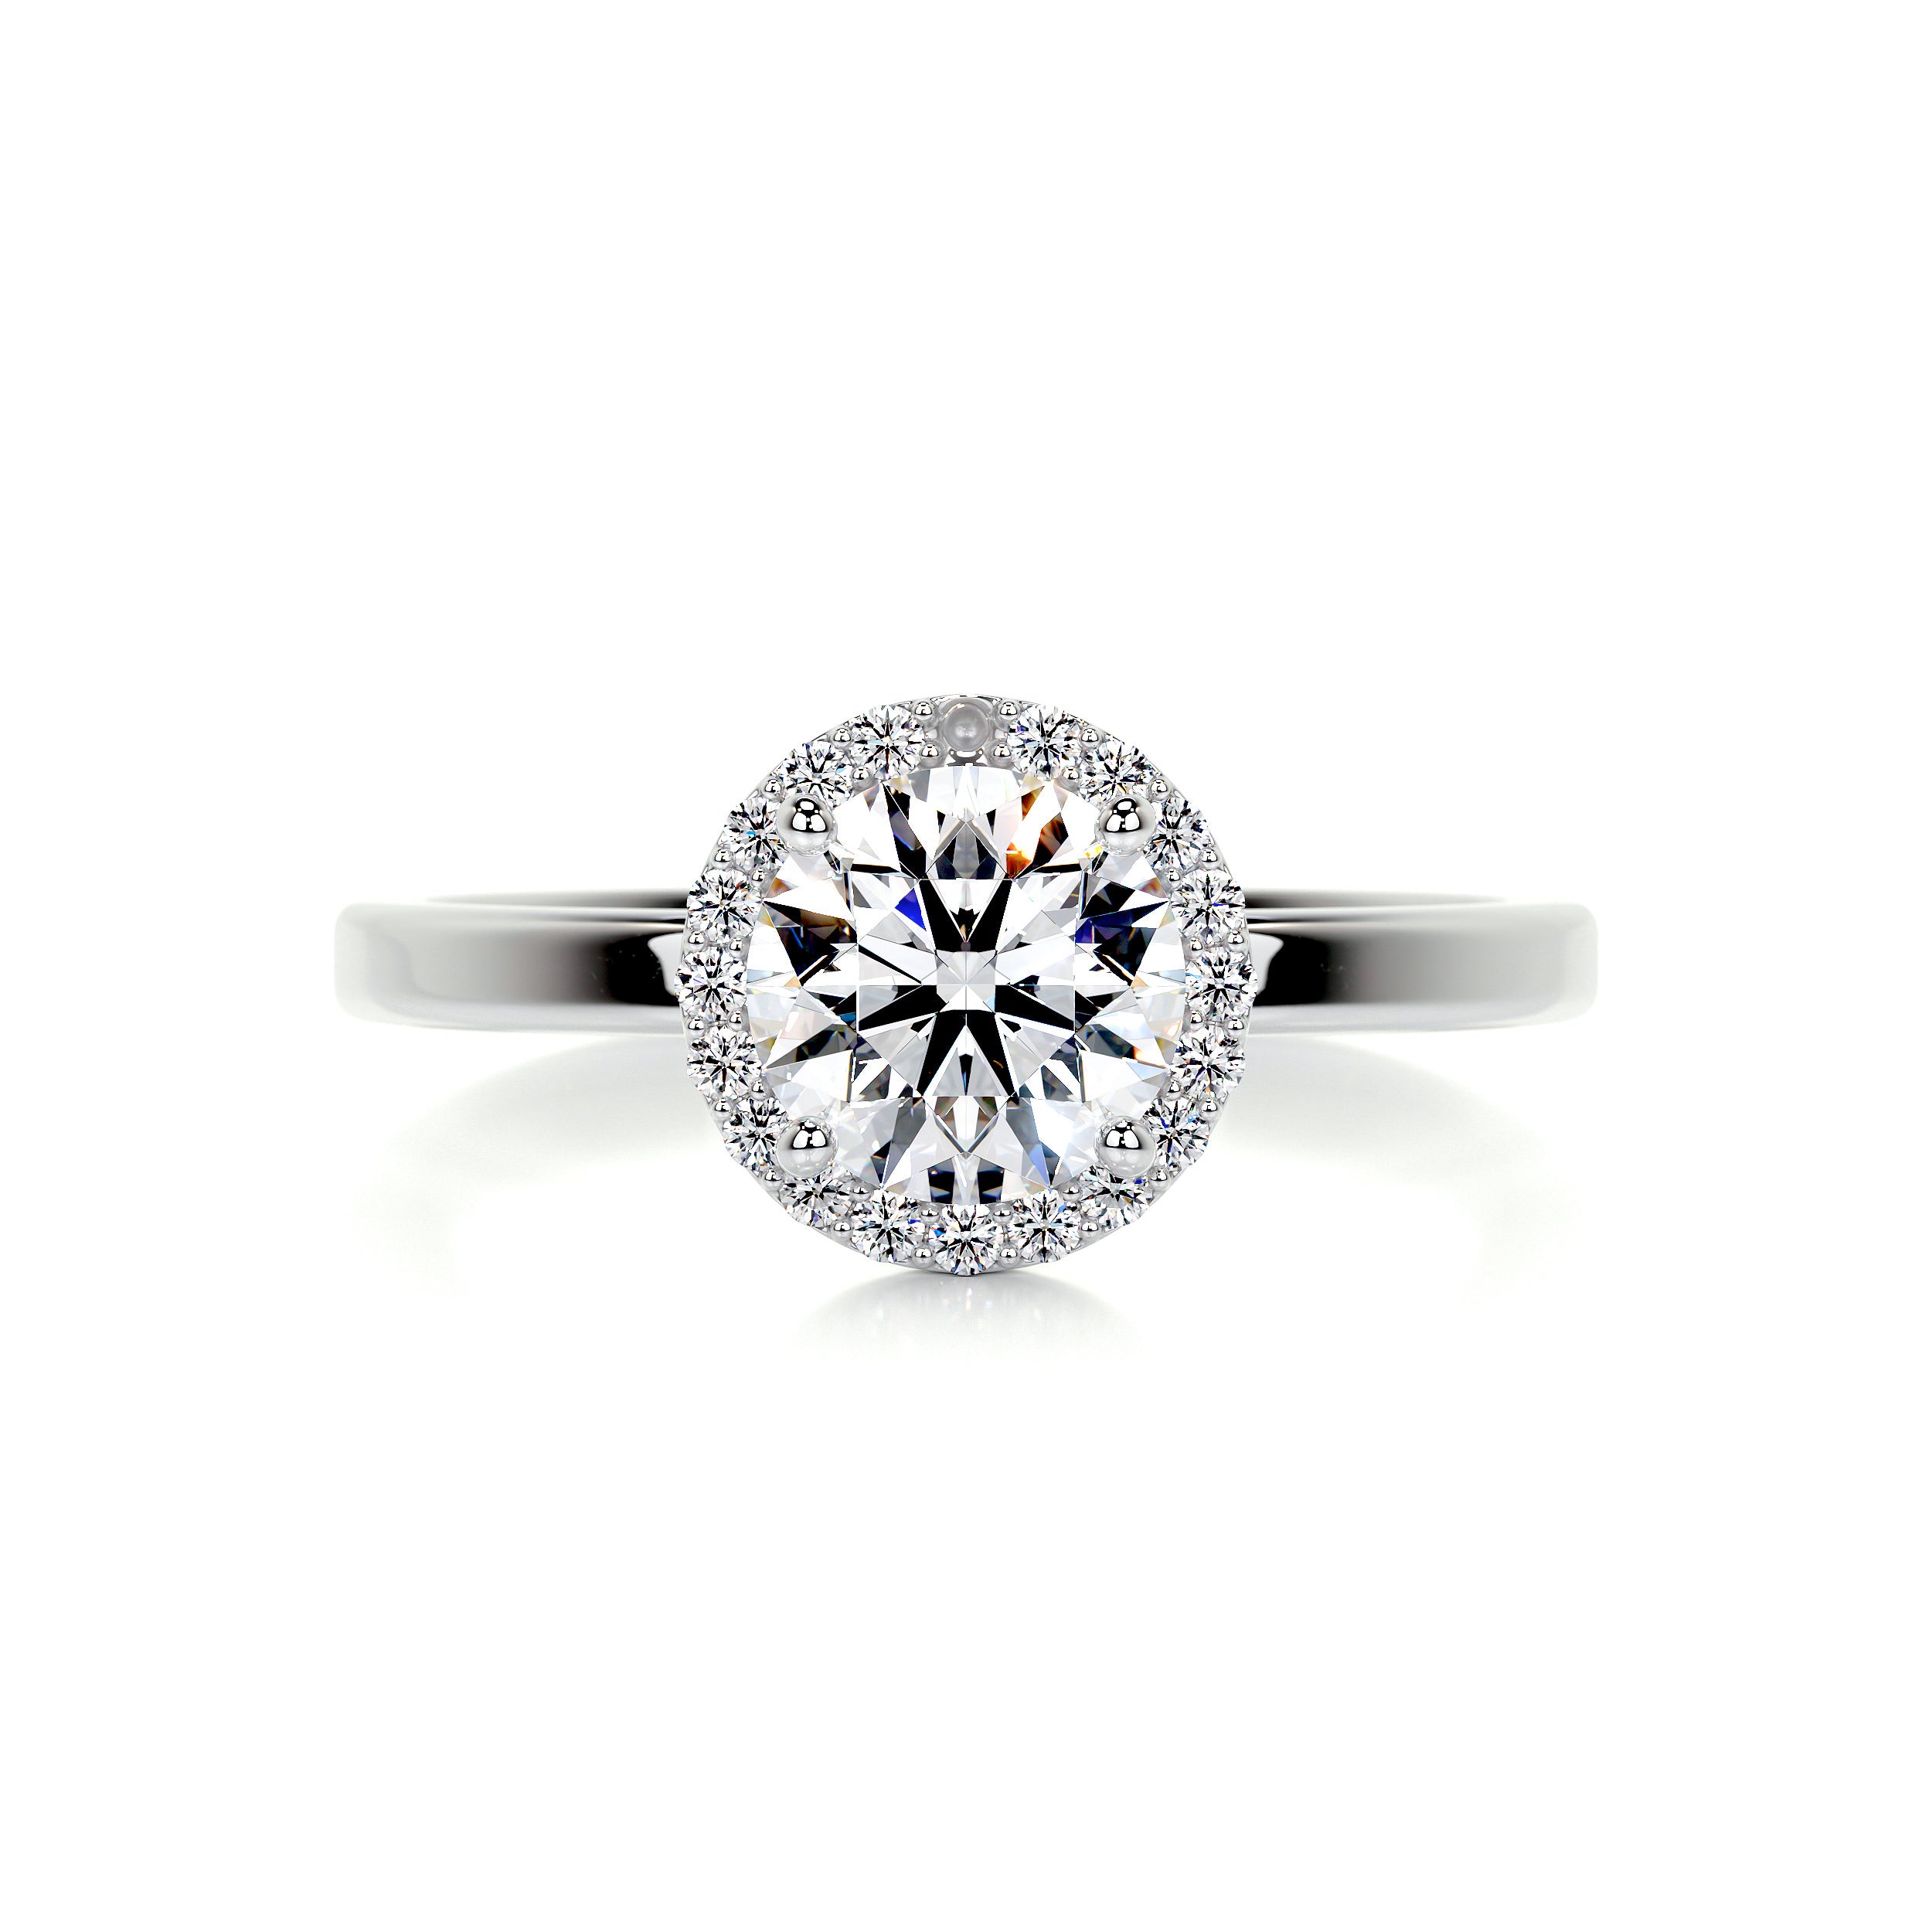 Anne Moissanite & Diamonds Ring   (1.10 Carat) -18K White Gold